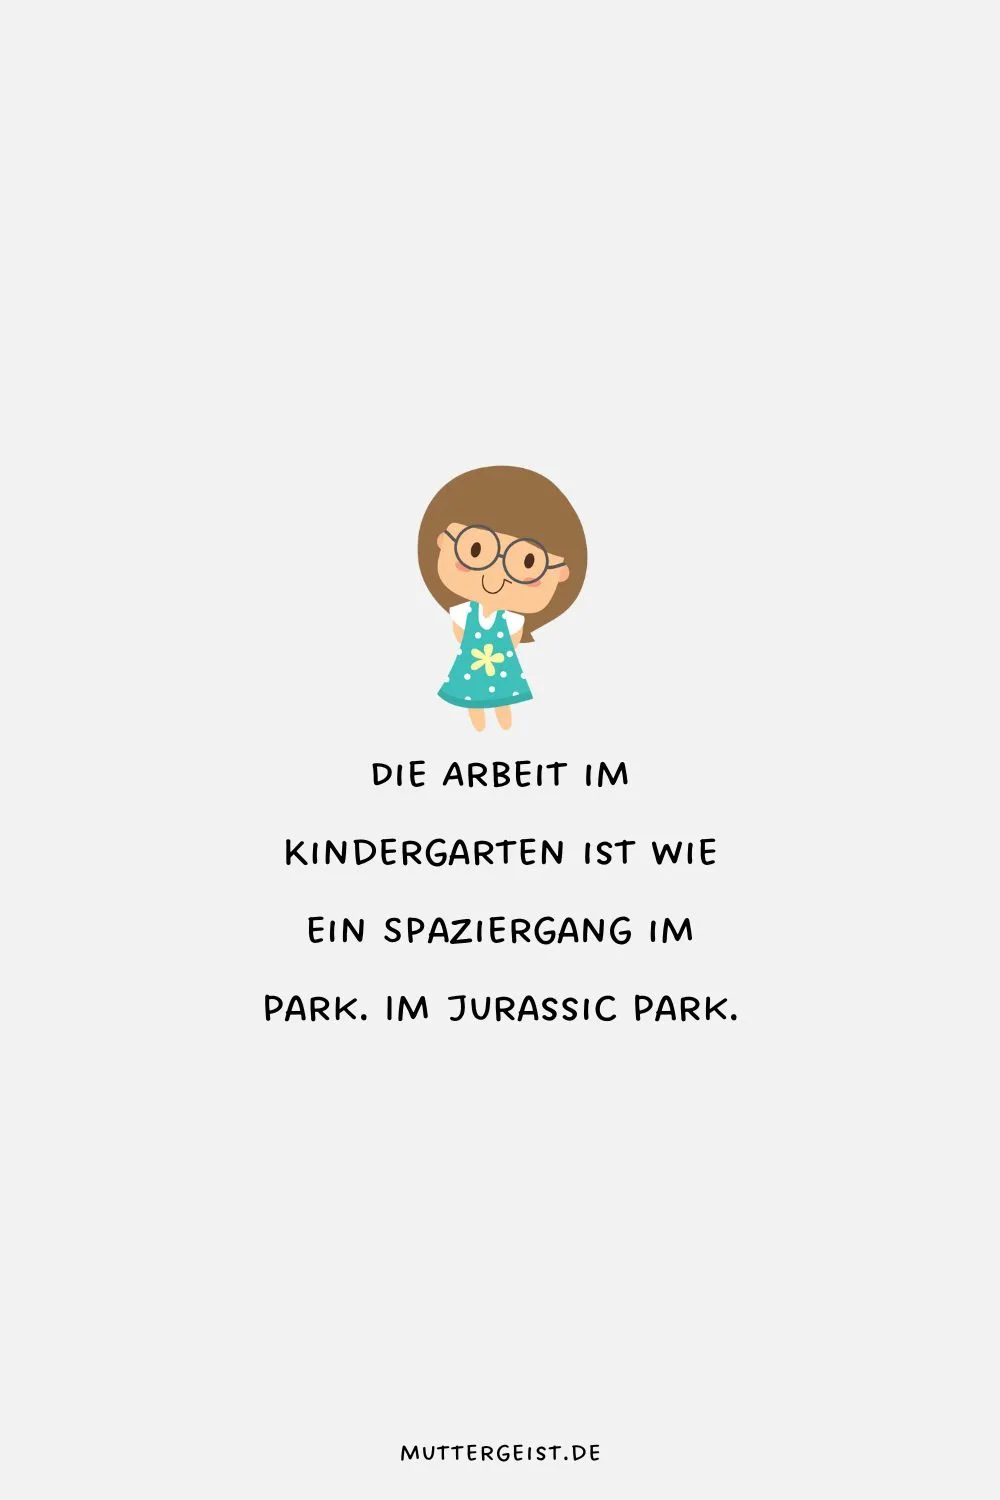 Die Arbeit im Kindergarten ist wie ein Spaziergang im Park. Im Jurassic Park